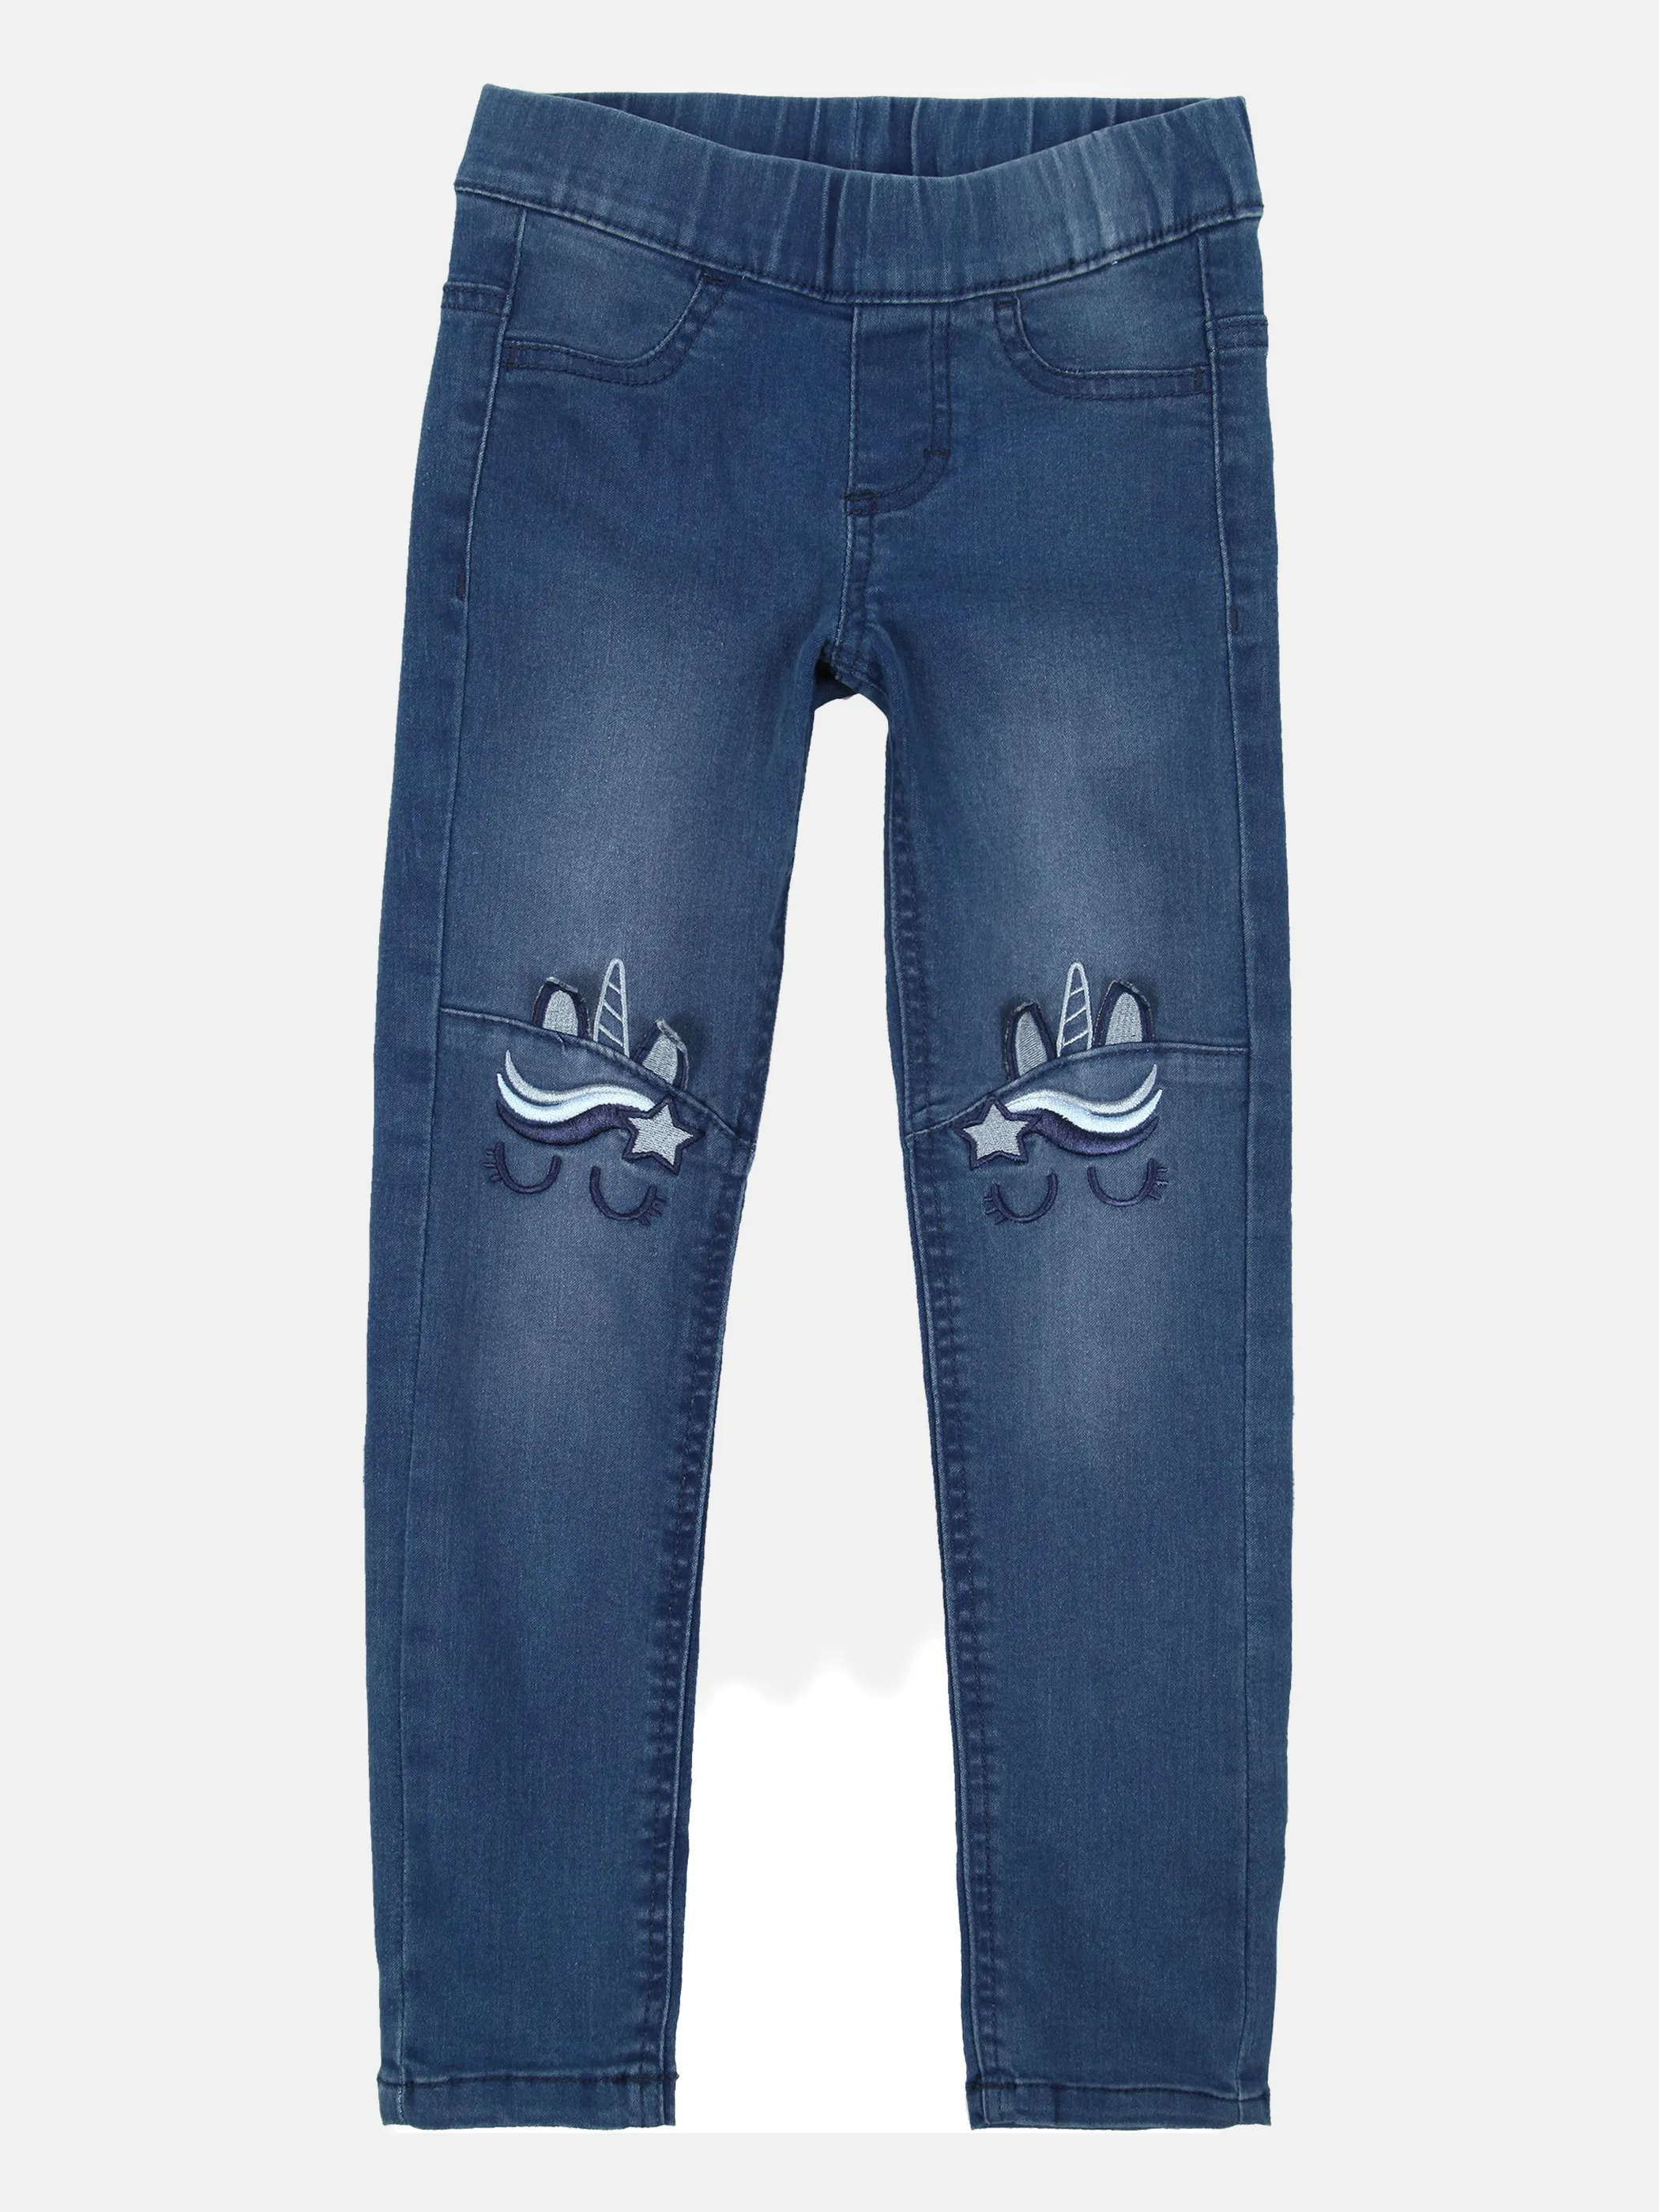 Stop + Go MG Jeggings in jeans blau mit Blau 856081 JEANSBLAU 1